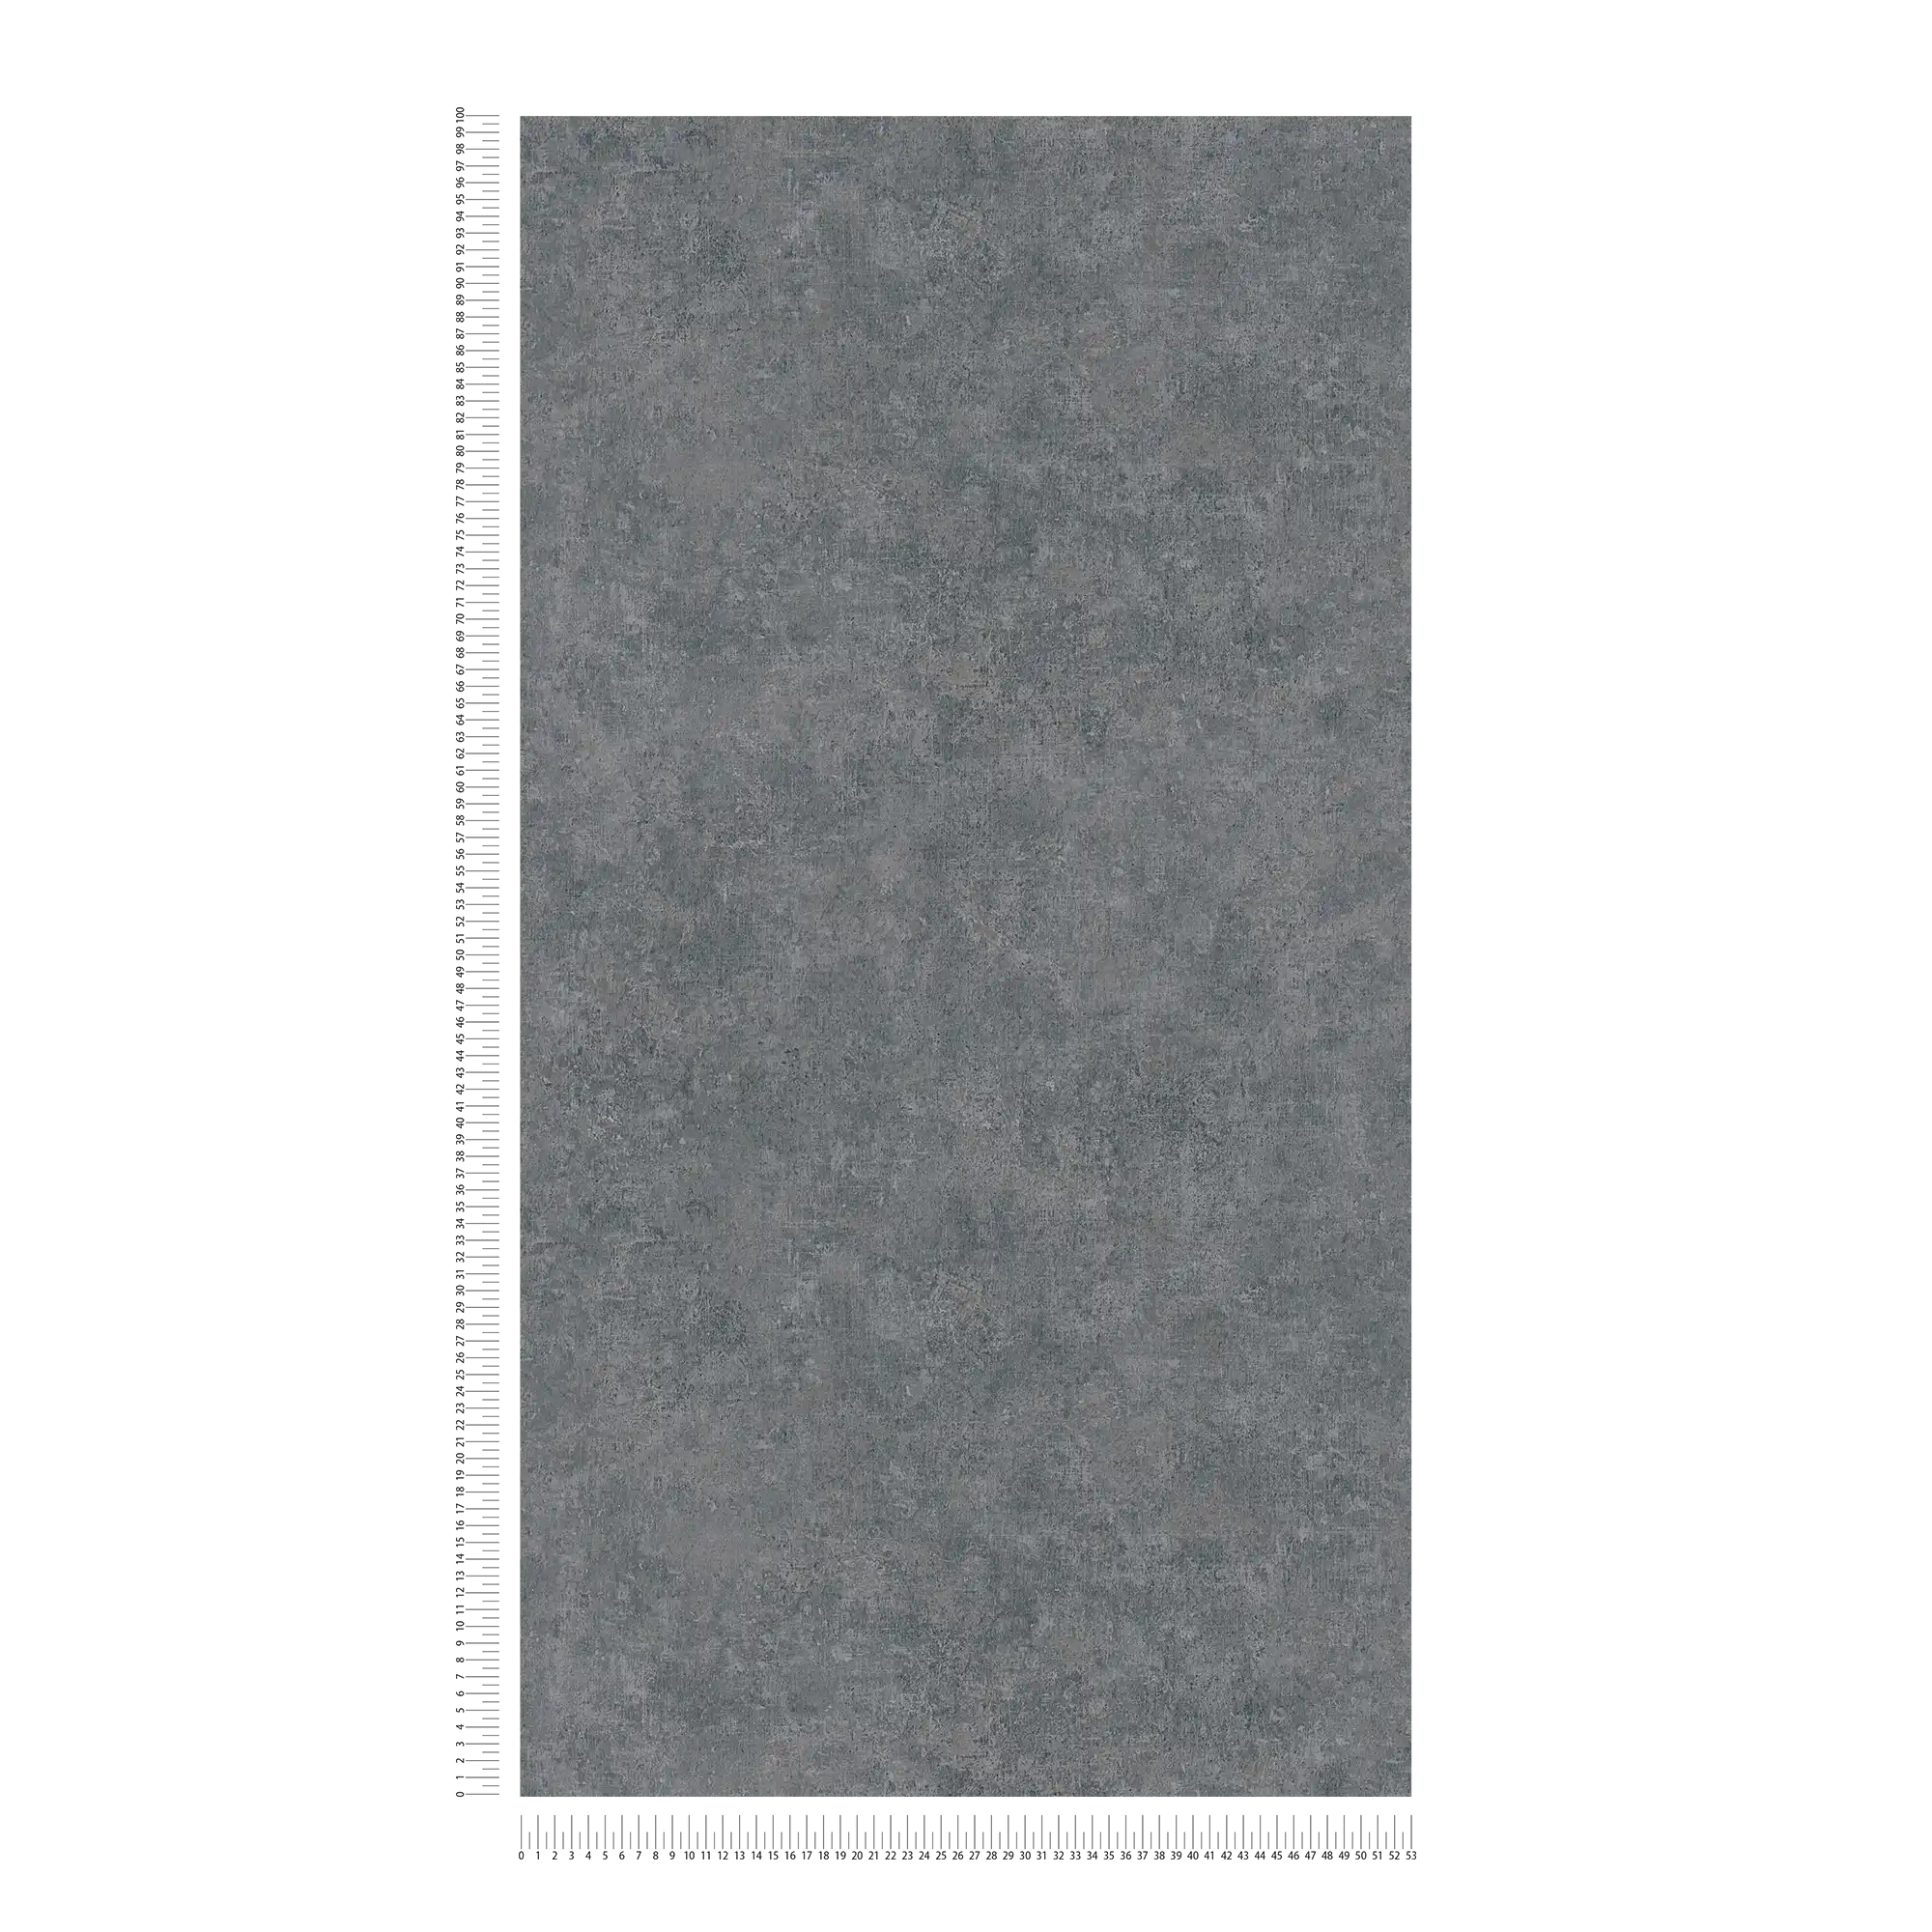             Carta da parati in tessuto non tessuto con motivo tono su tono, aspetto usato - grigio
        